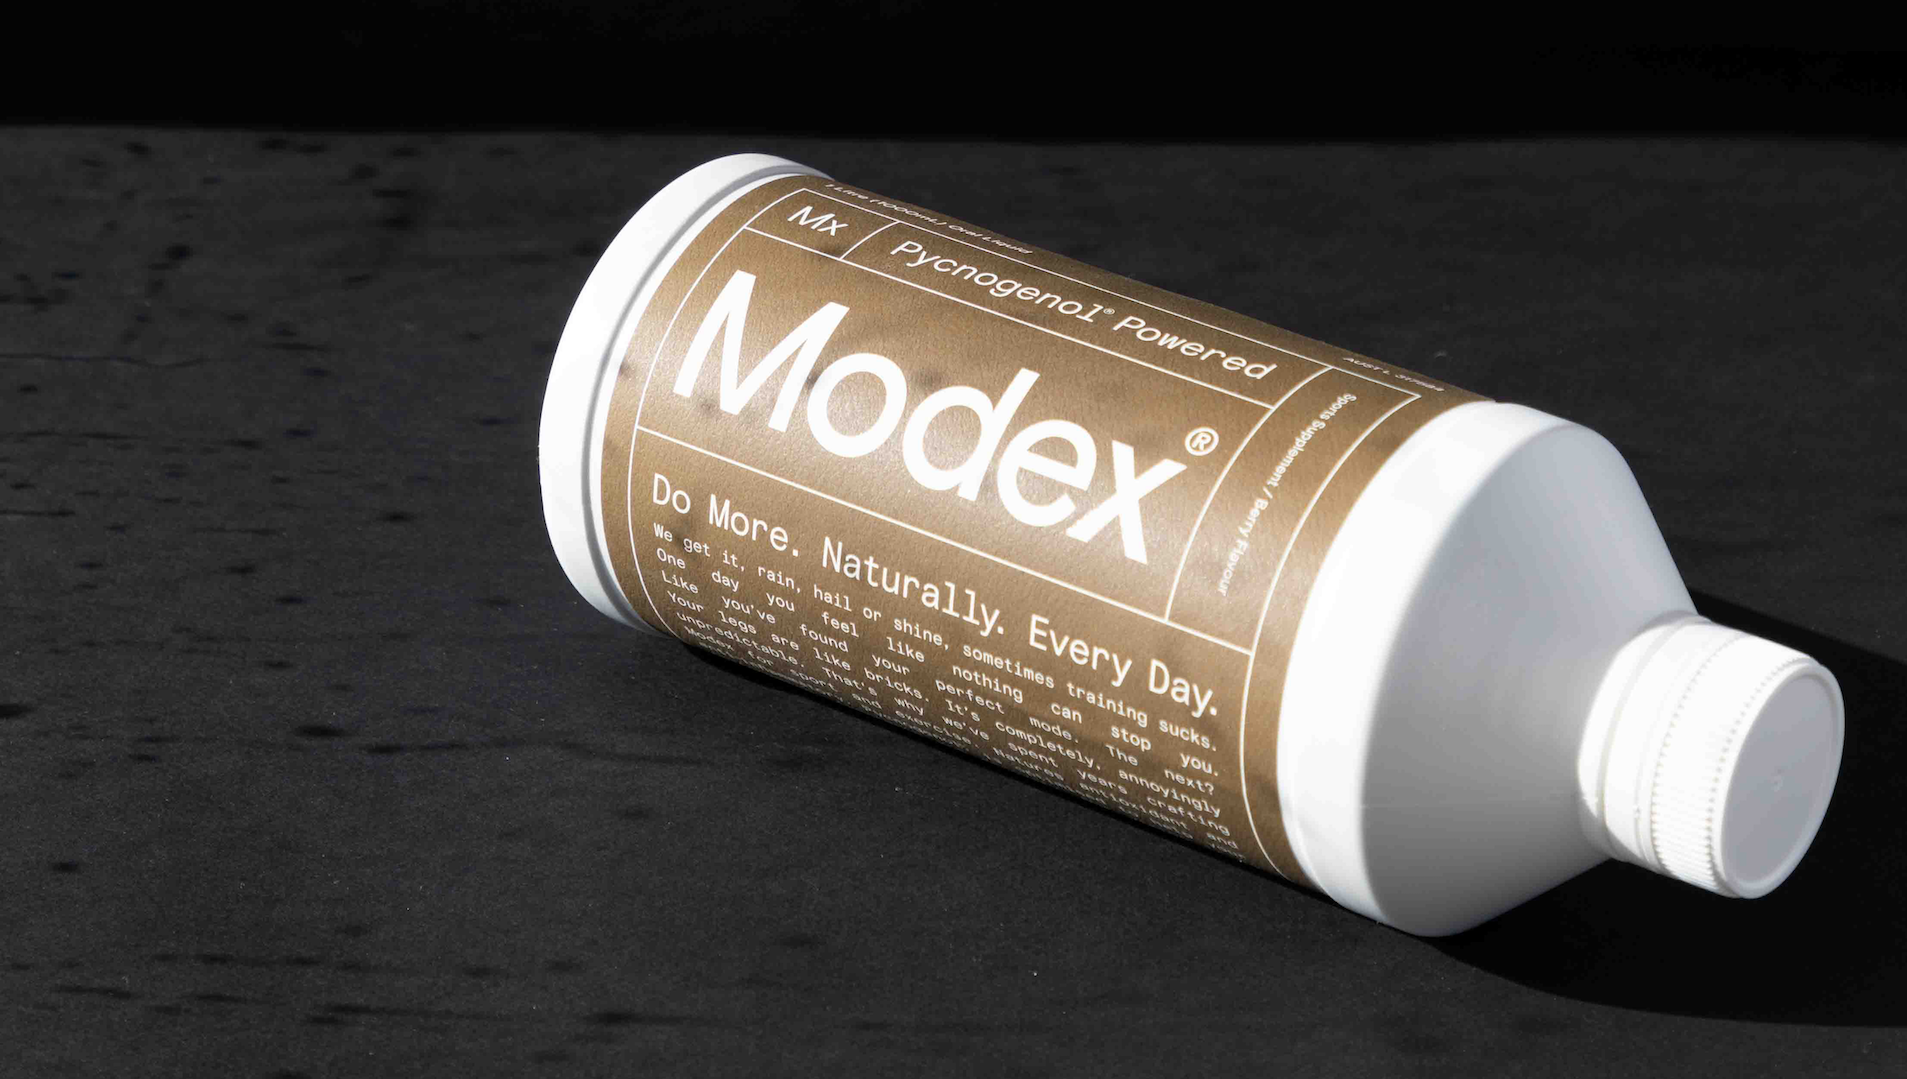 Пауэр в цвете. BIOGENA Пикногенол® 100 Голд. "Modex" and "Mega Parts". Modex217. Modex.